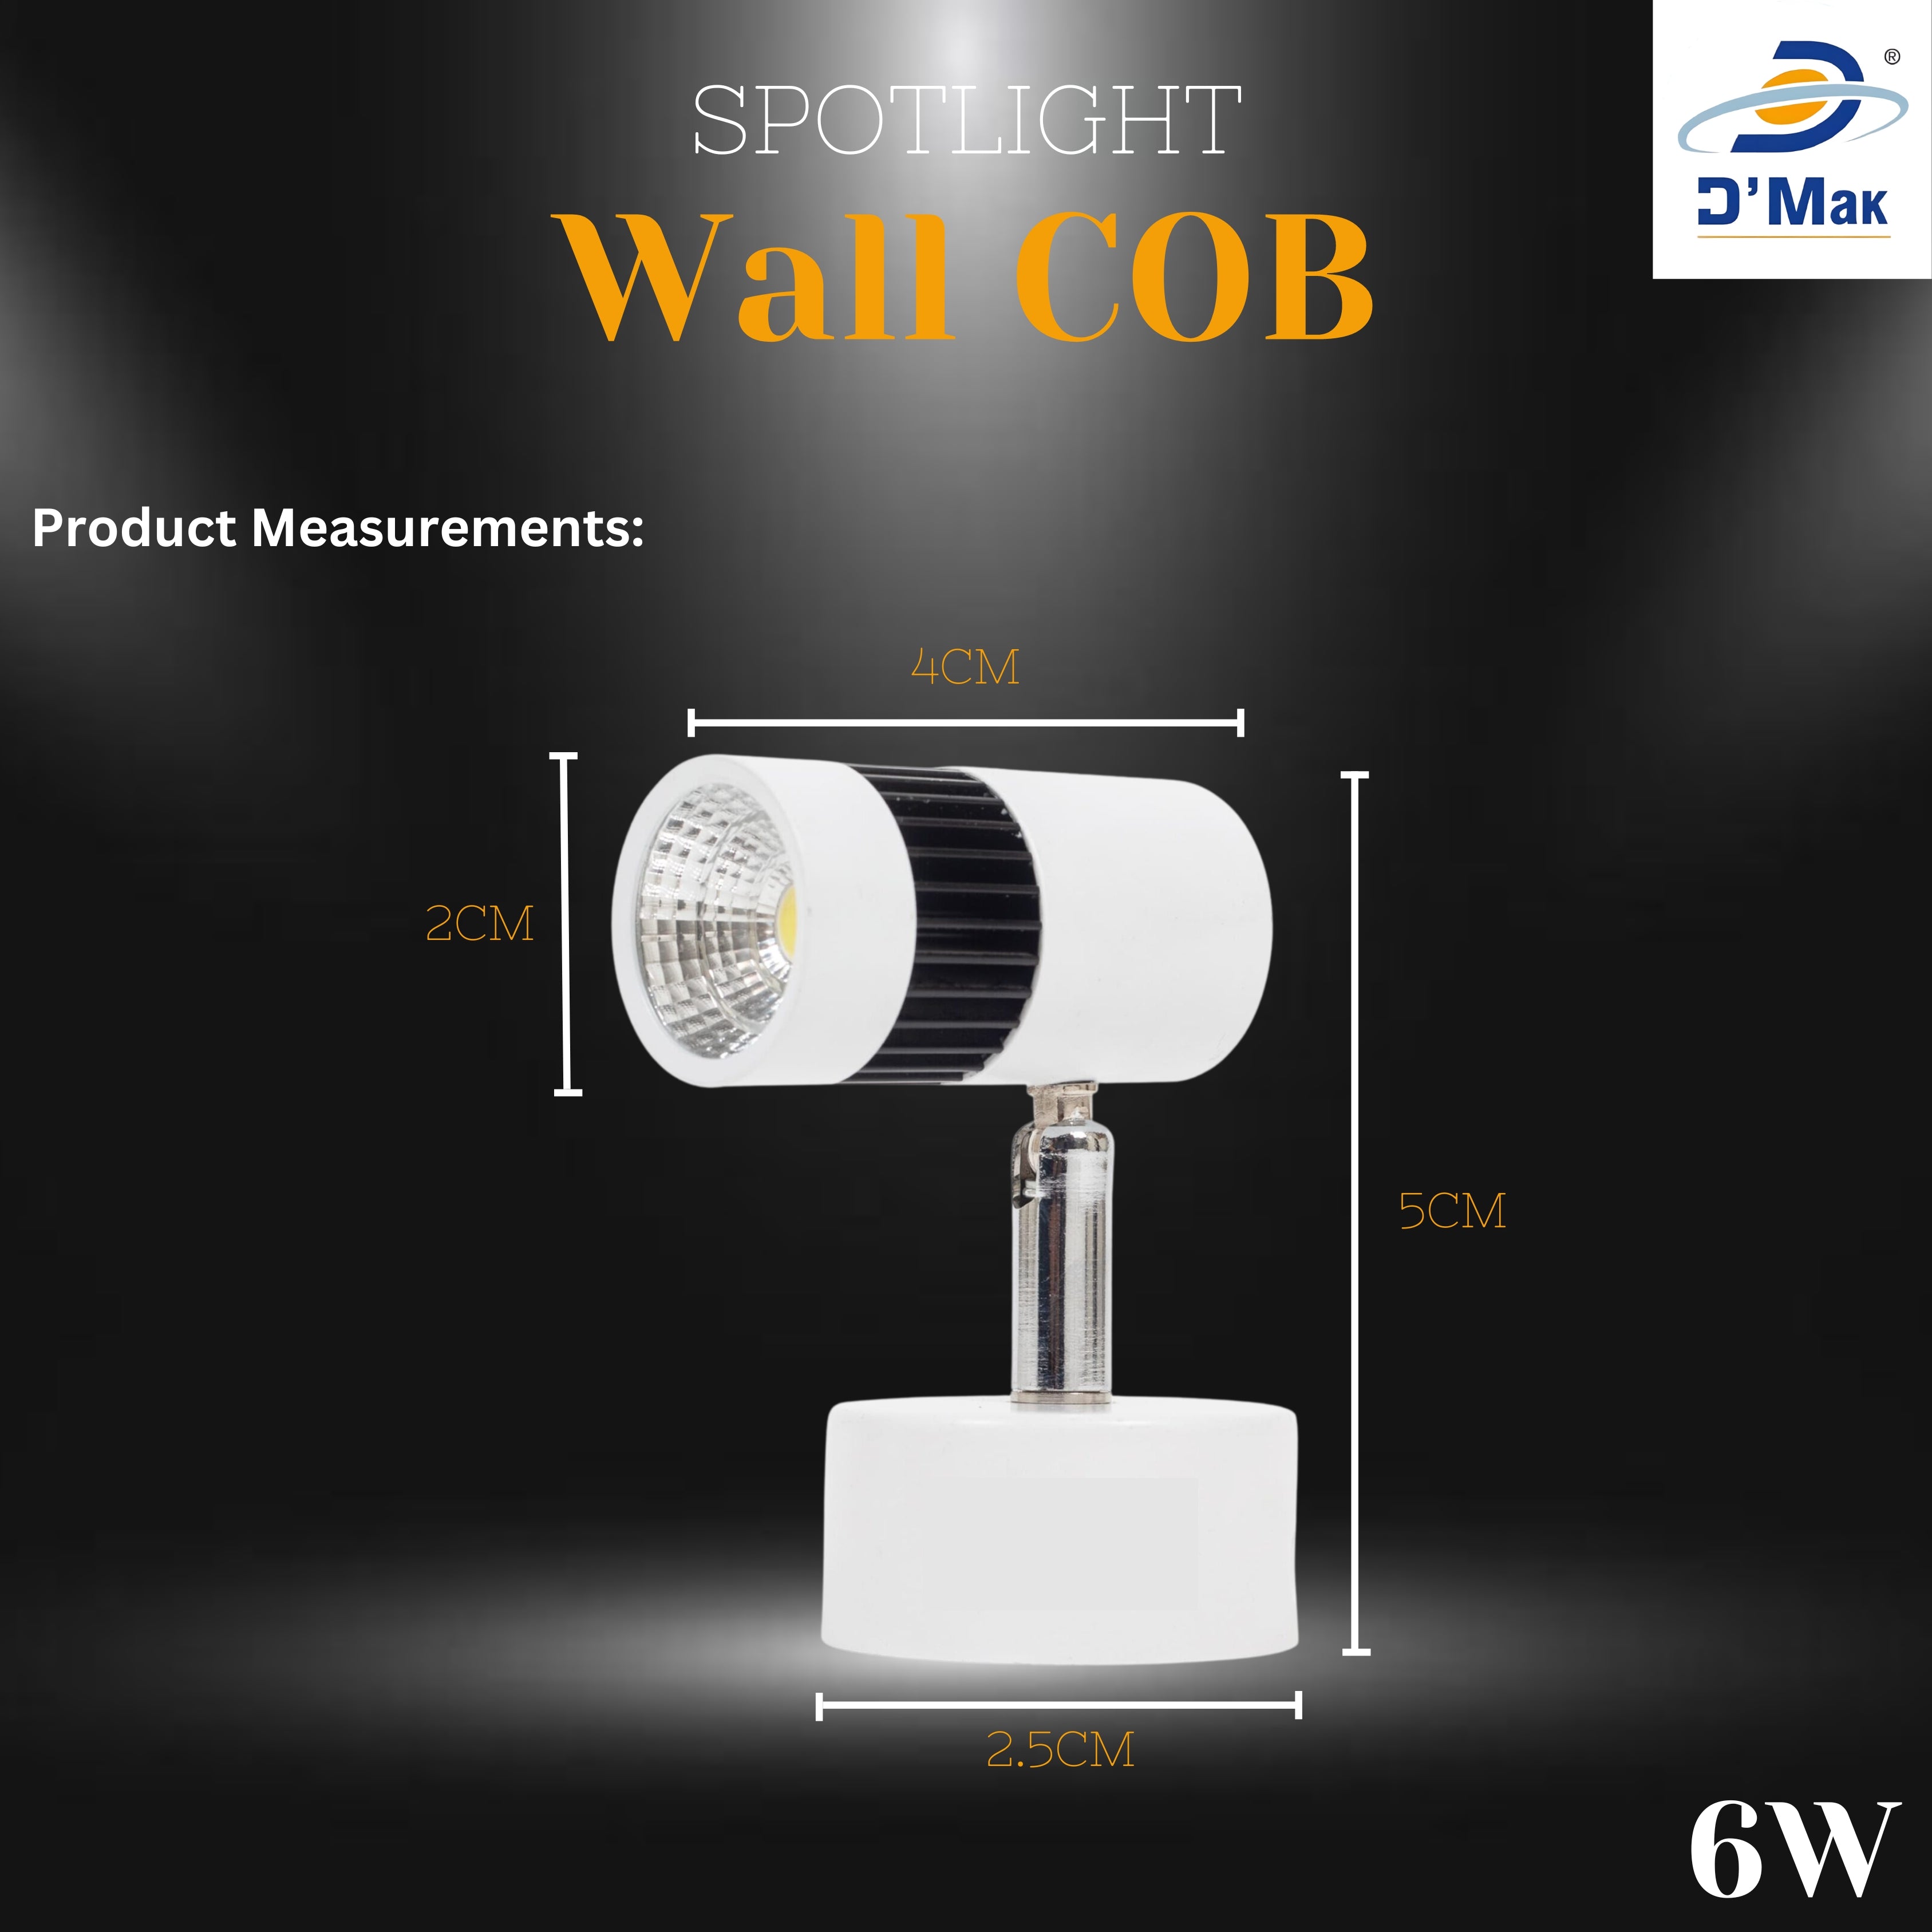 6 Watt Led White Body Wall Light for focusing wall or photo frame